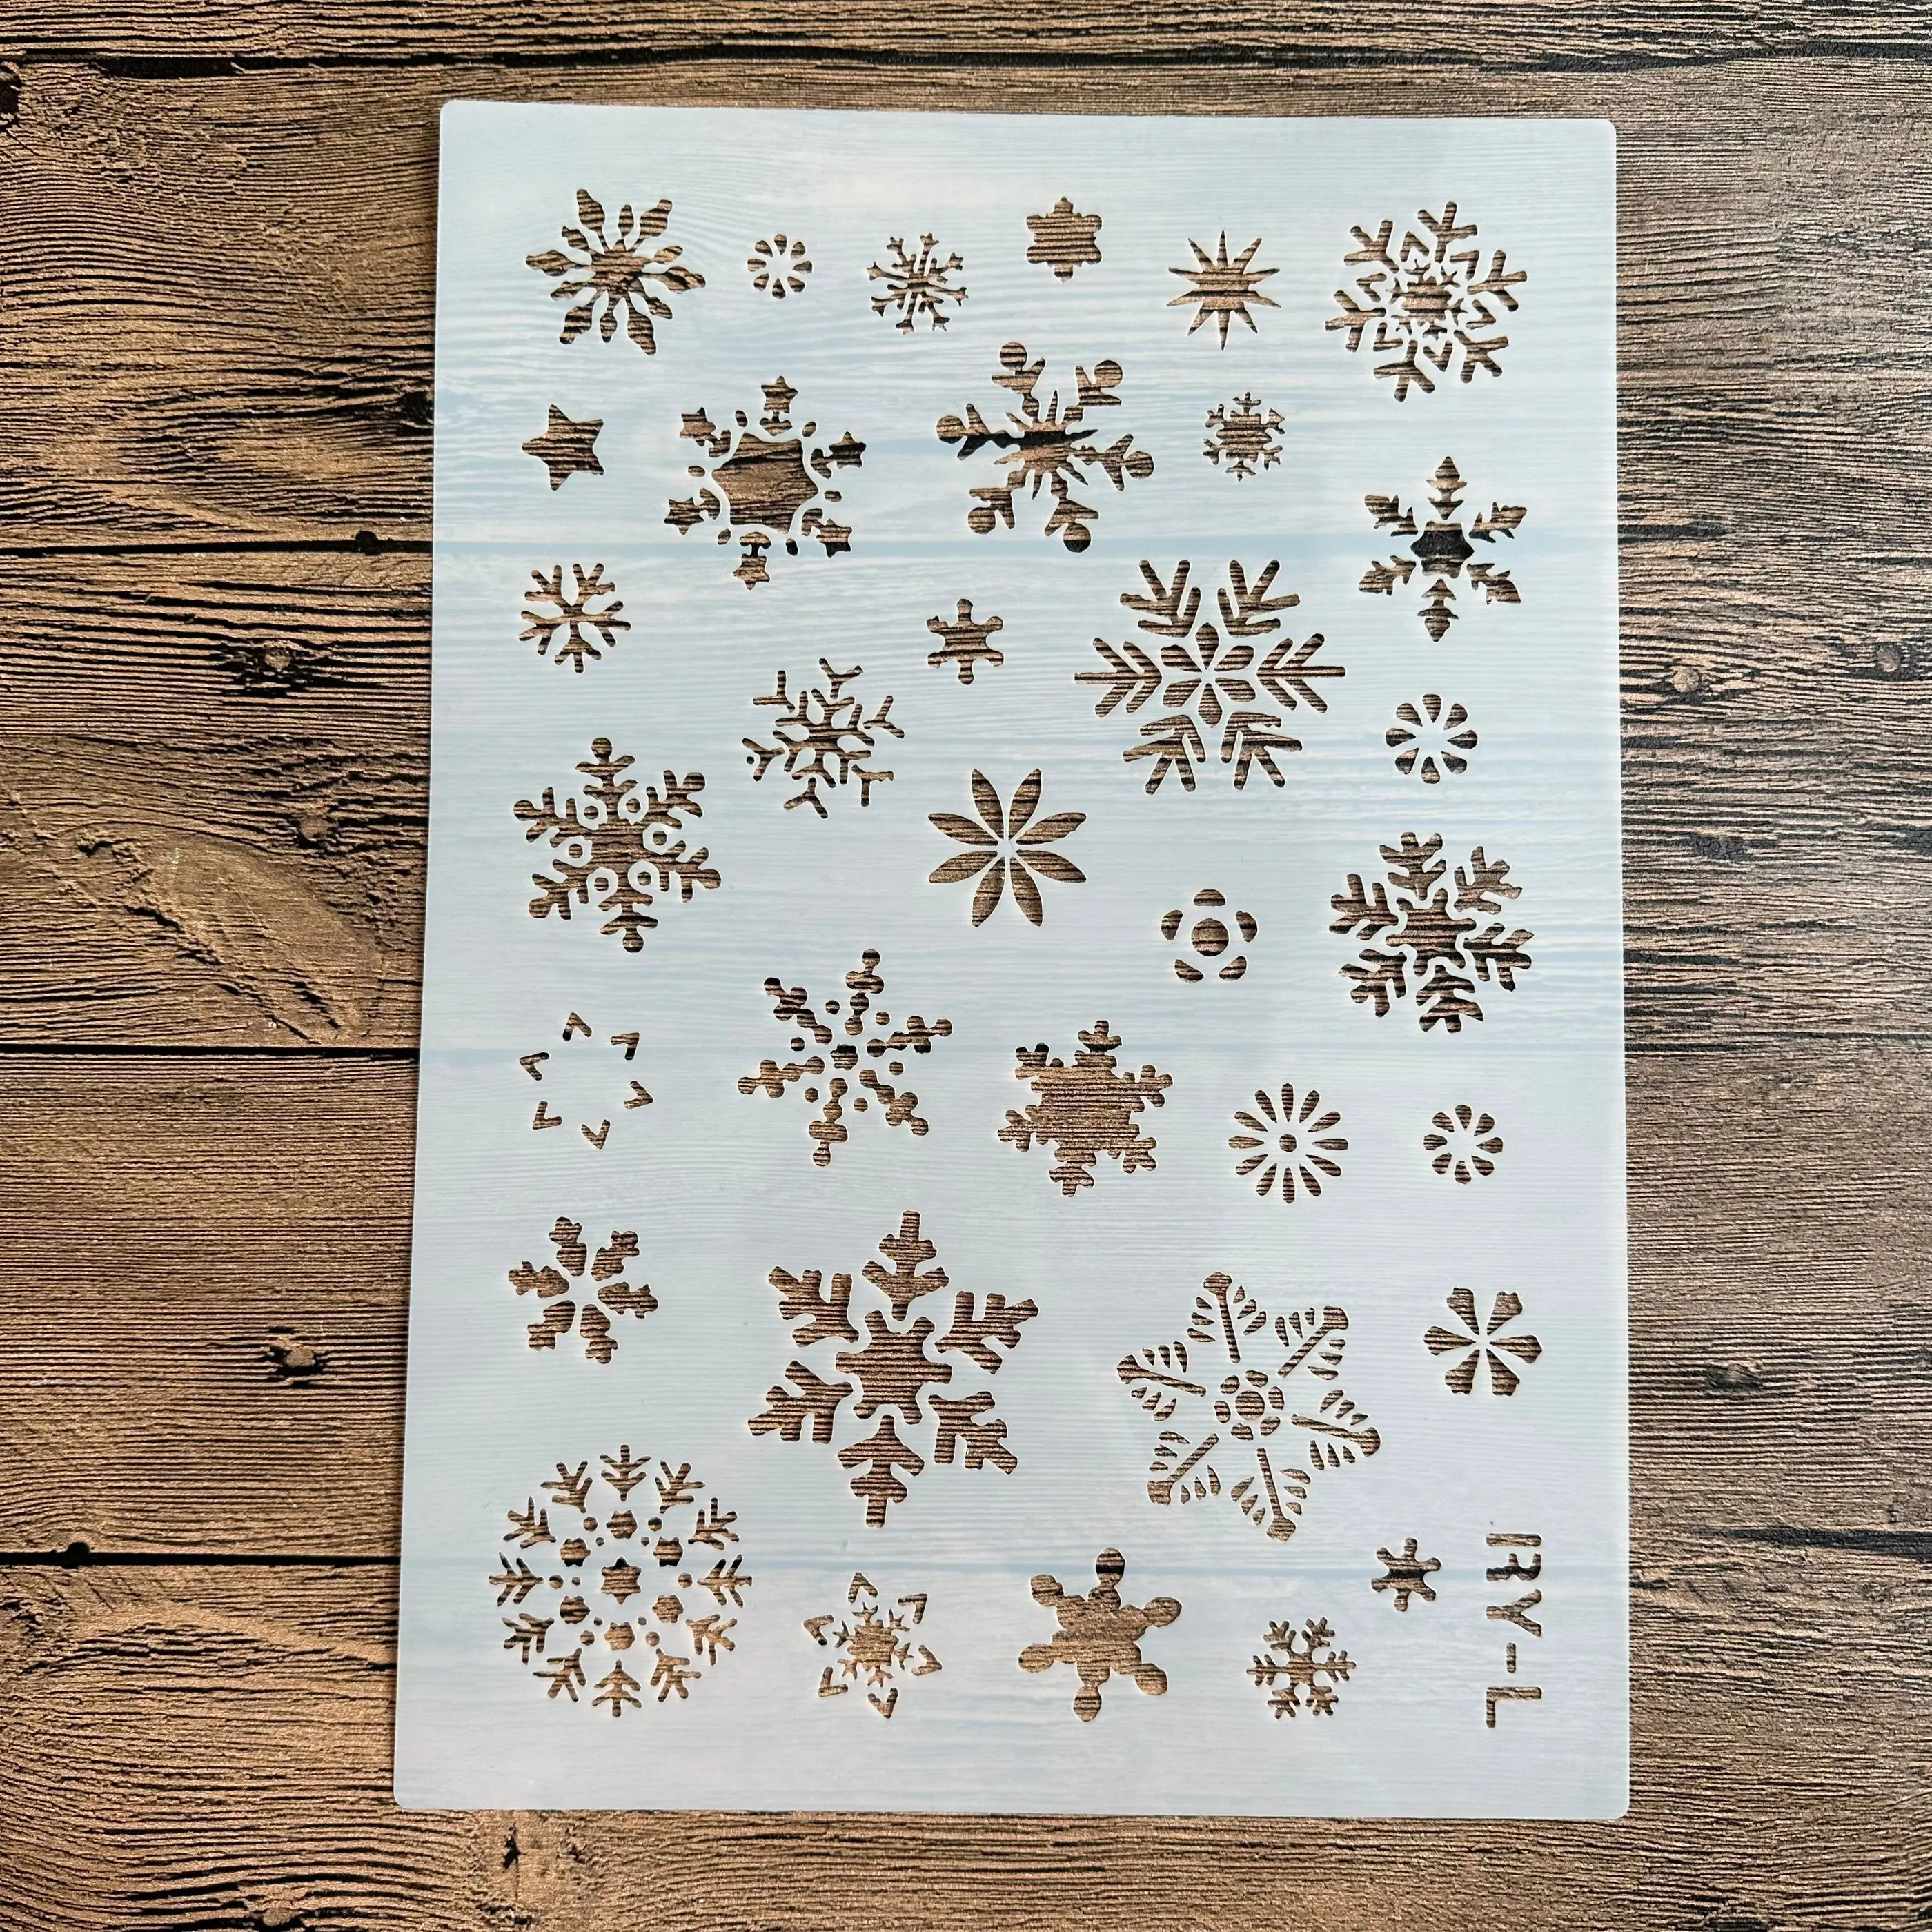 Мандала своими руками формата А4 29 *21см для рисования, трафареты, штампованный фотоальбом, тисненая бумажная открытка на дереве, ткани, рождественские снежинки